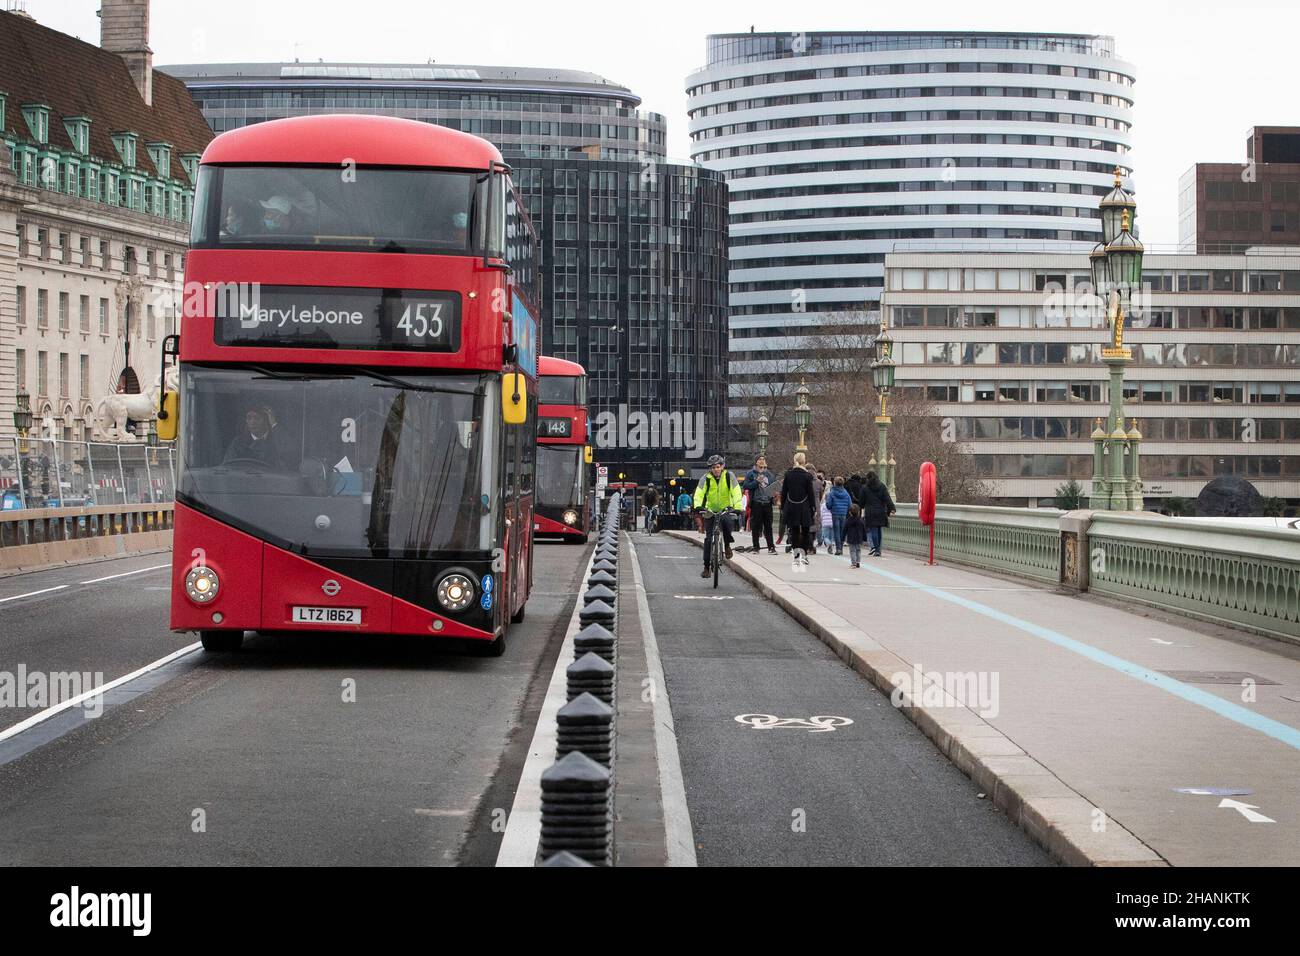 Radfahrer werden auf den neu installierten Radwegen auf der Westminster Bridge in London gesehen, während der Londoner Bürgermeister Sadiq Khan versucht, grünes Reisen zu fördern Stockfoto